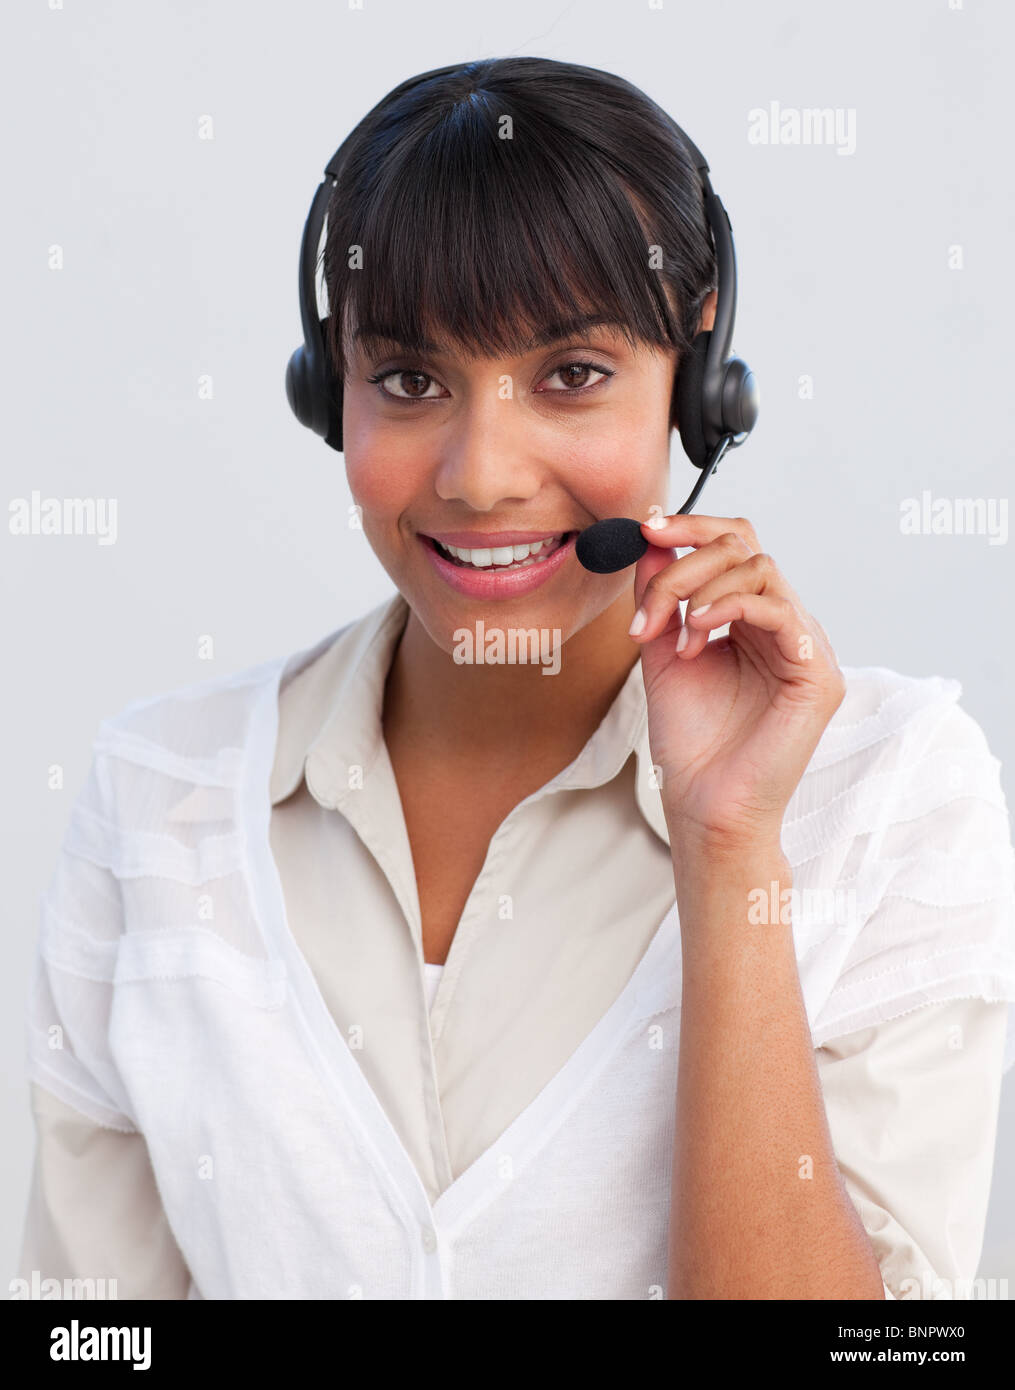 Lächelnd Geschäftsfrau arbeitet in einem Callcenter Stockfoto